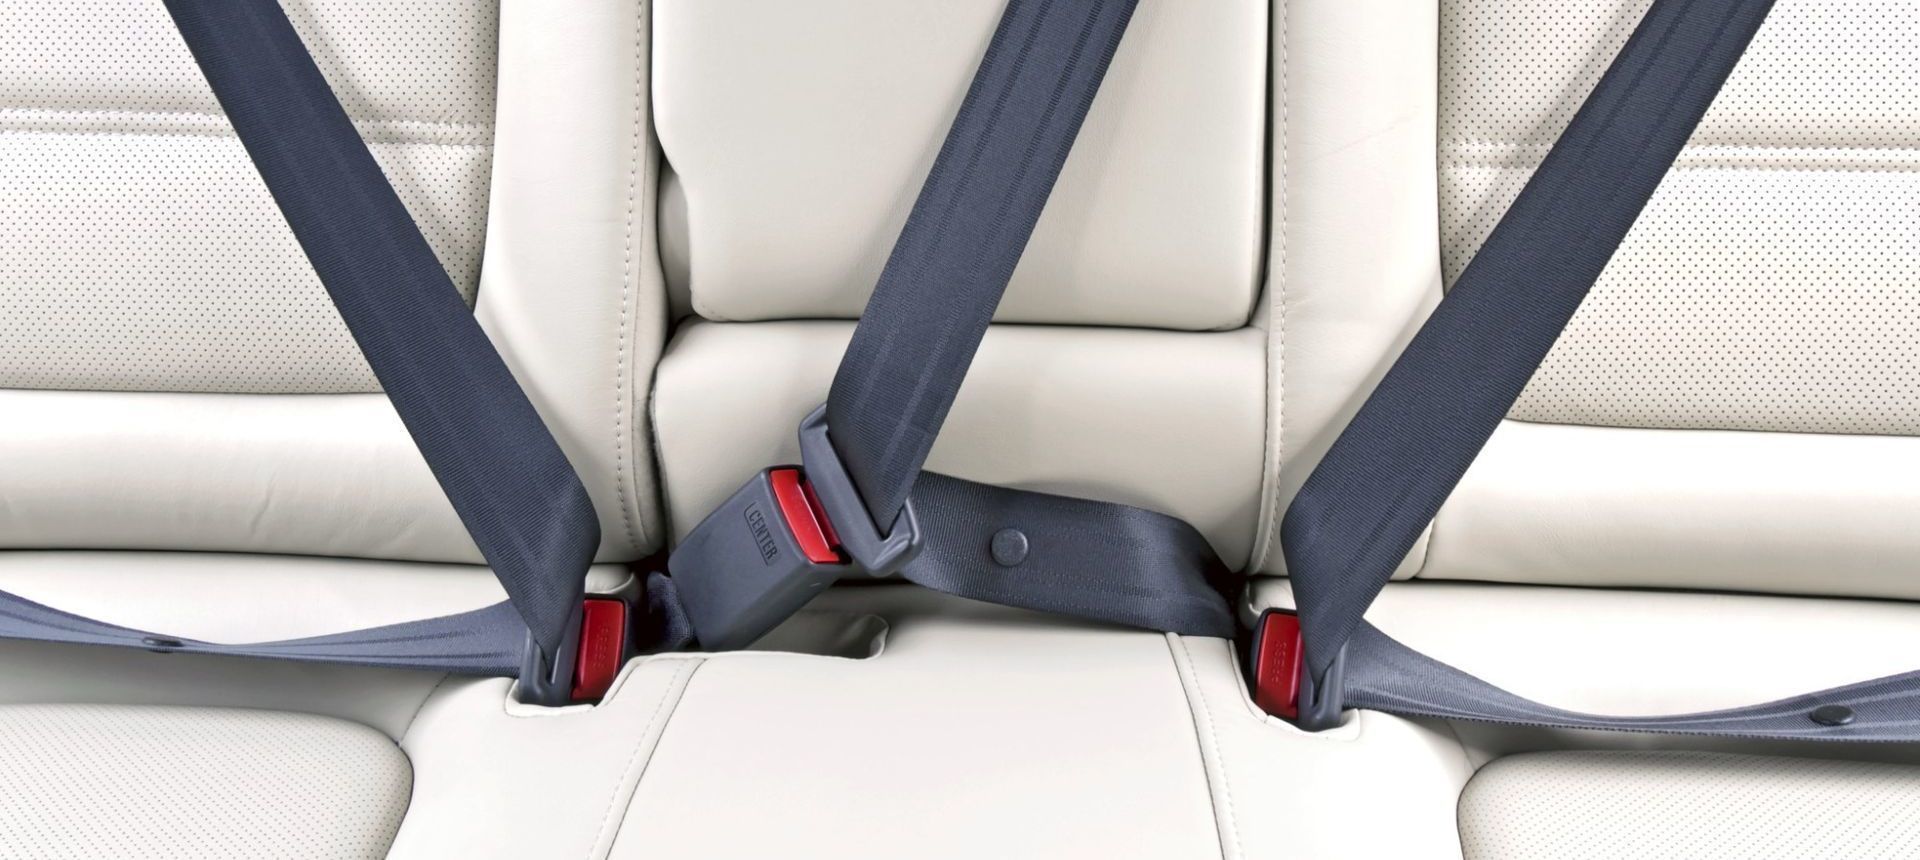 Cuál fue el primer coche en tener cinturón de seguridad?